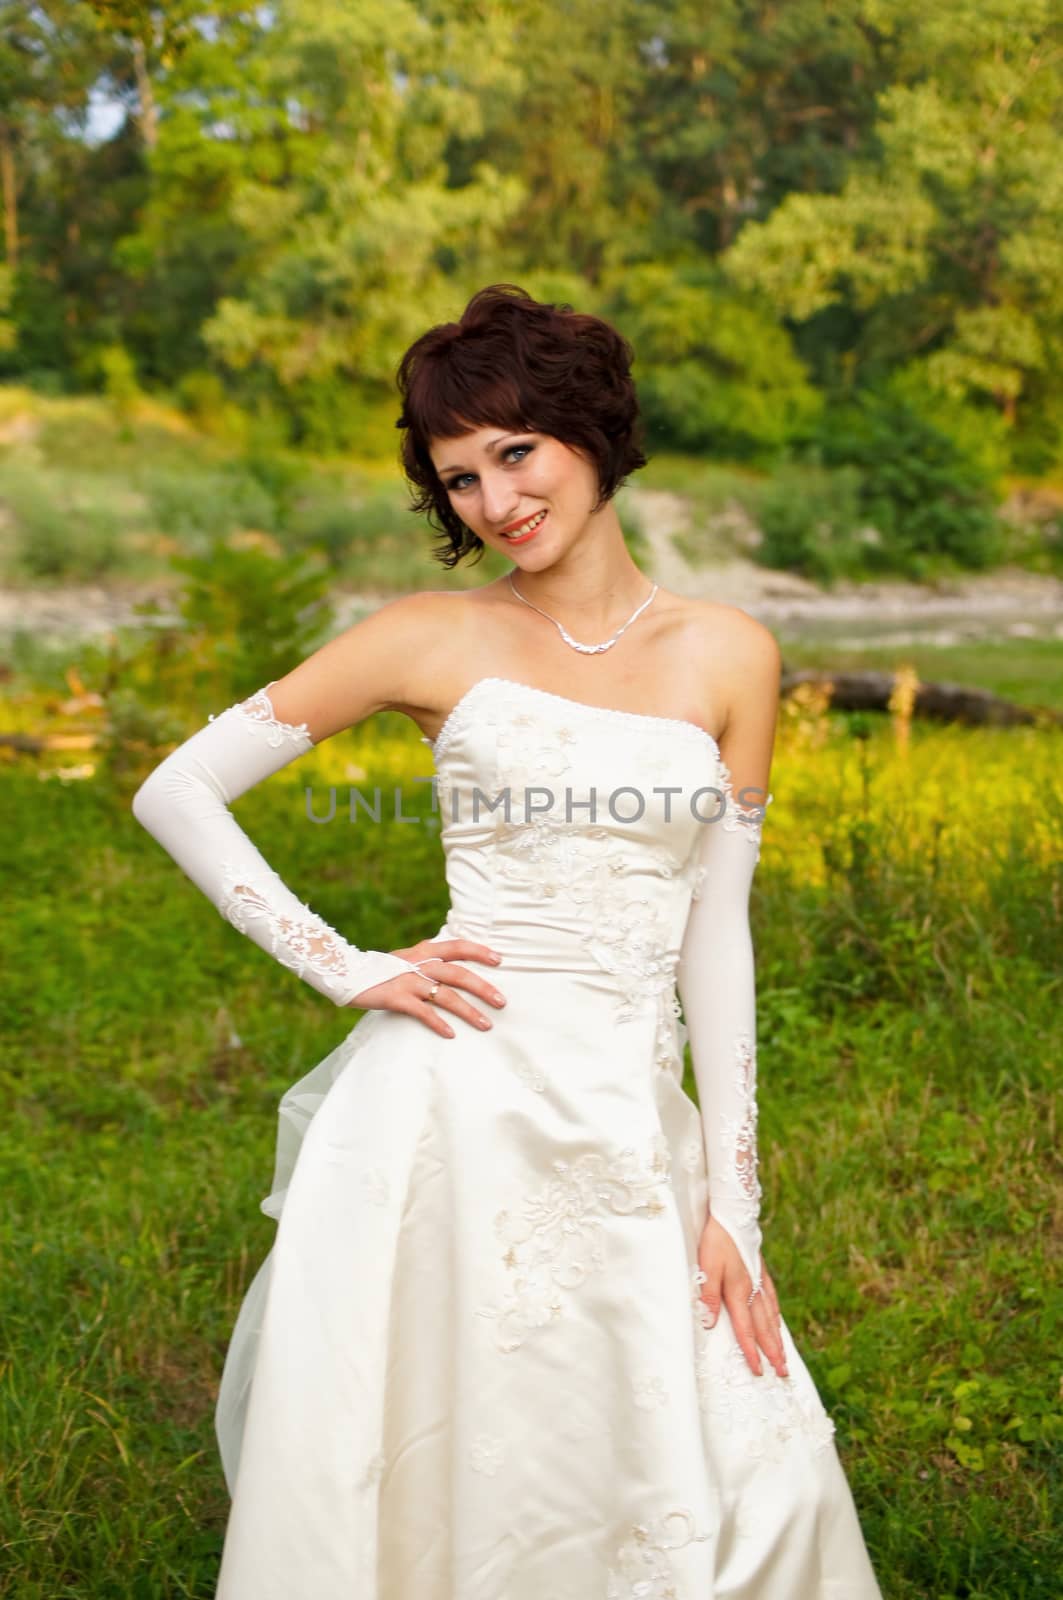 the lovely girl in a wedding dress by Viktoha